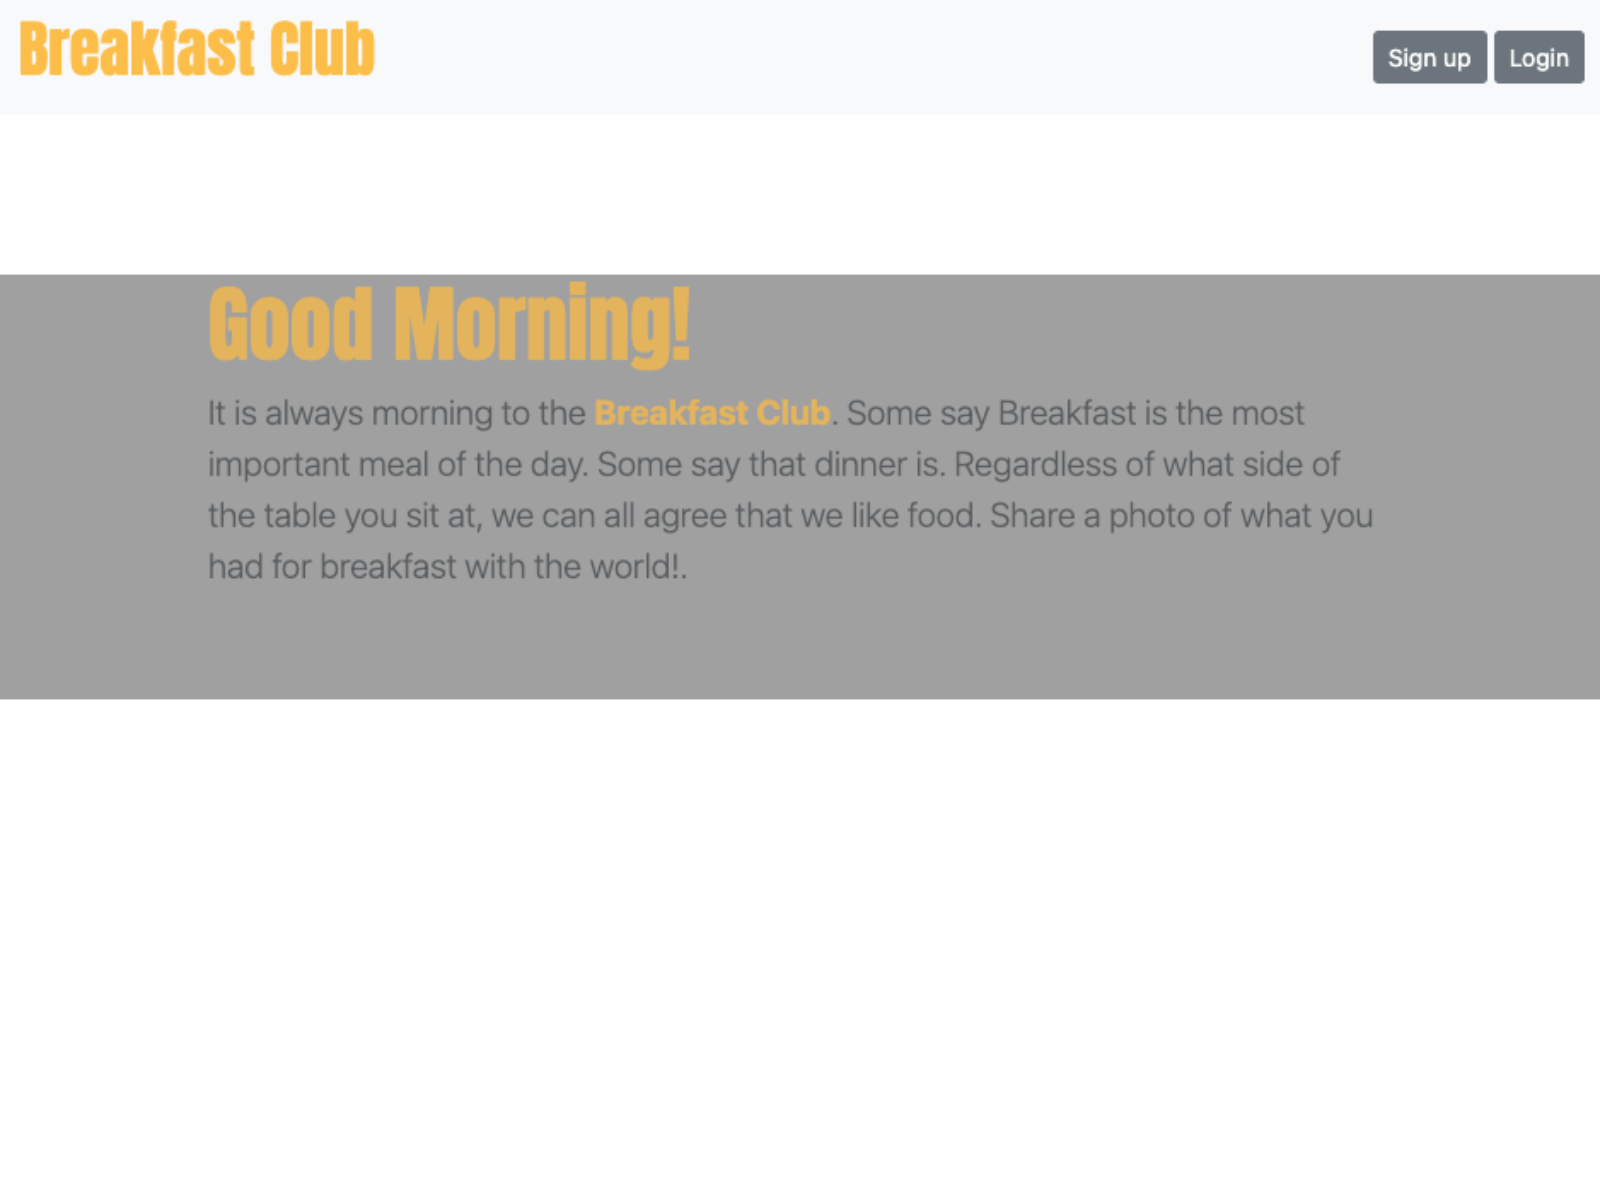 Image of Breakfast Club app